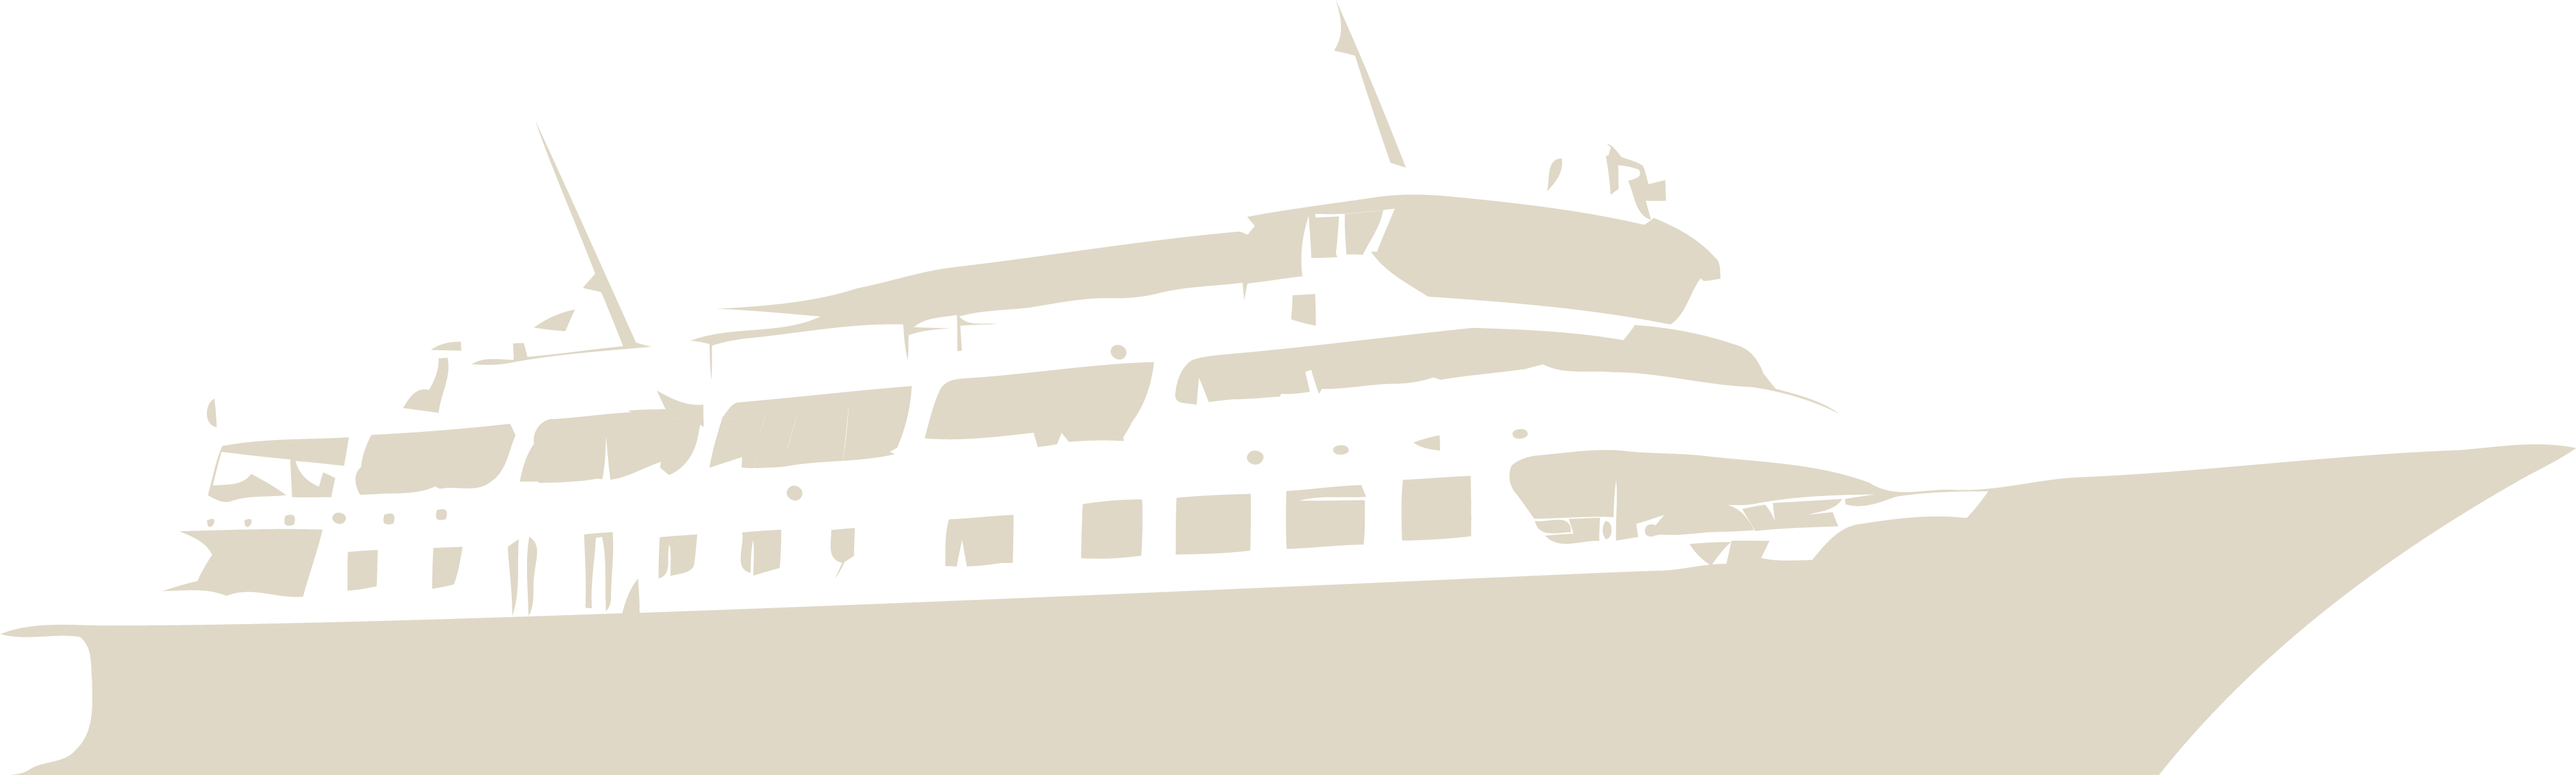 Silhouetteof Cruise Shipat Dusk PNG image